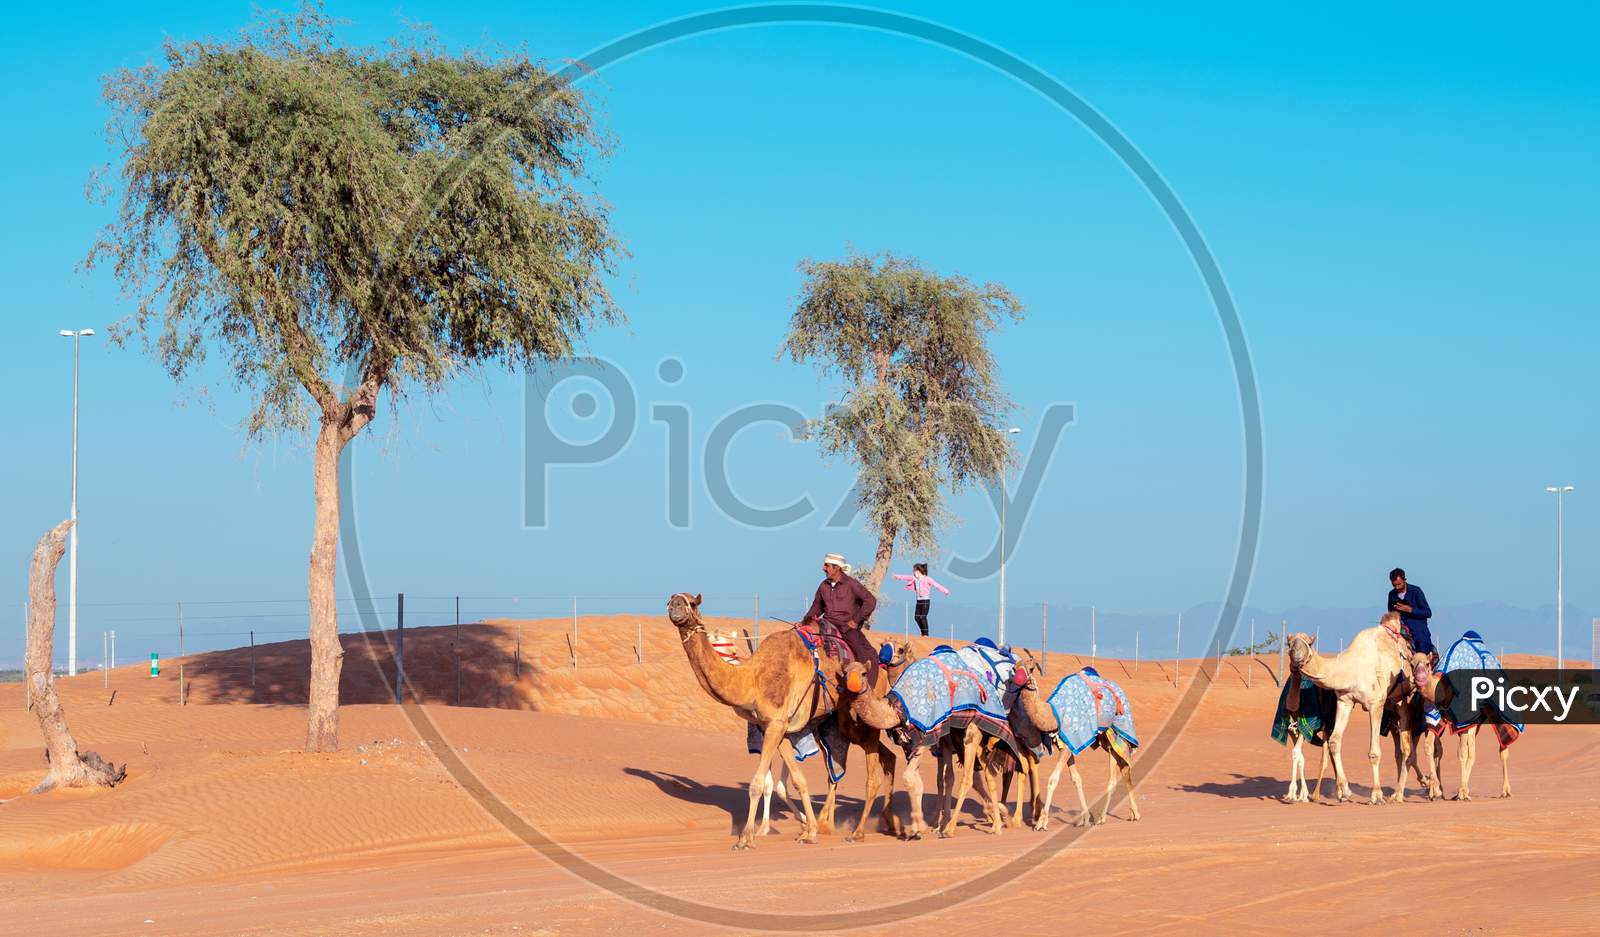 December 2Nd 2020 Maliha Desert,Sharjah .Men Riding On The Camels Captured At The Maliha Desert , Sharjah, Uae.